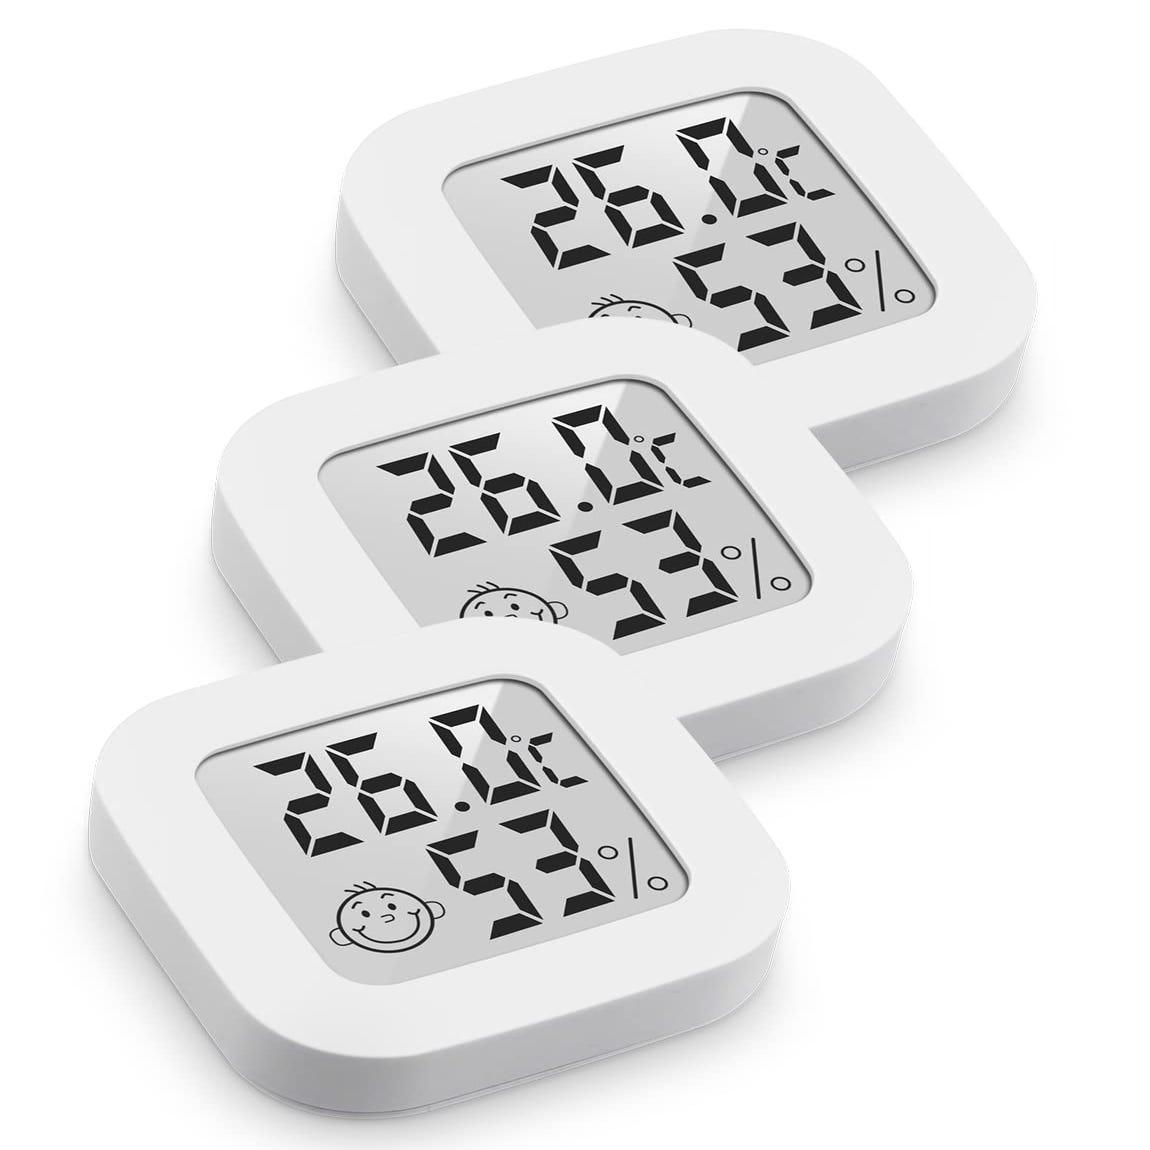 Hygromètre numérique Thermomètre intérieur Thermomètre de pièce Et  indicateur d'humidité avec moniteur d'humidité et de température  (67x78x22mm)